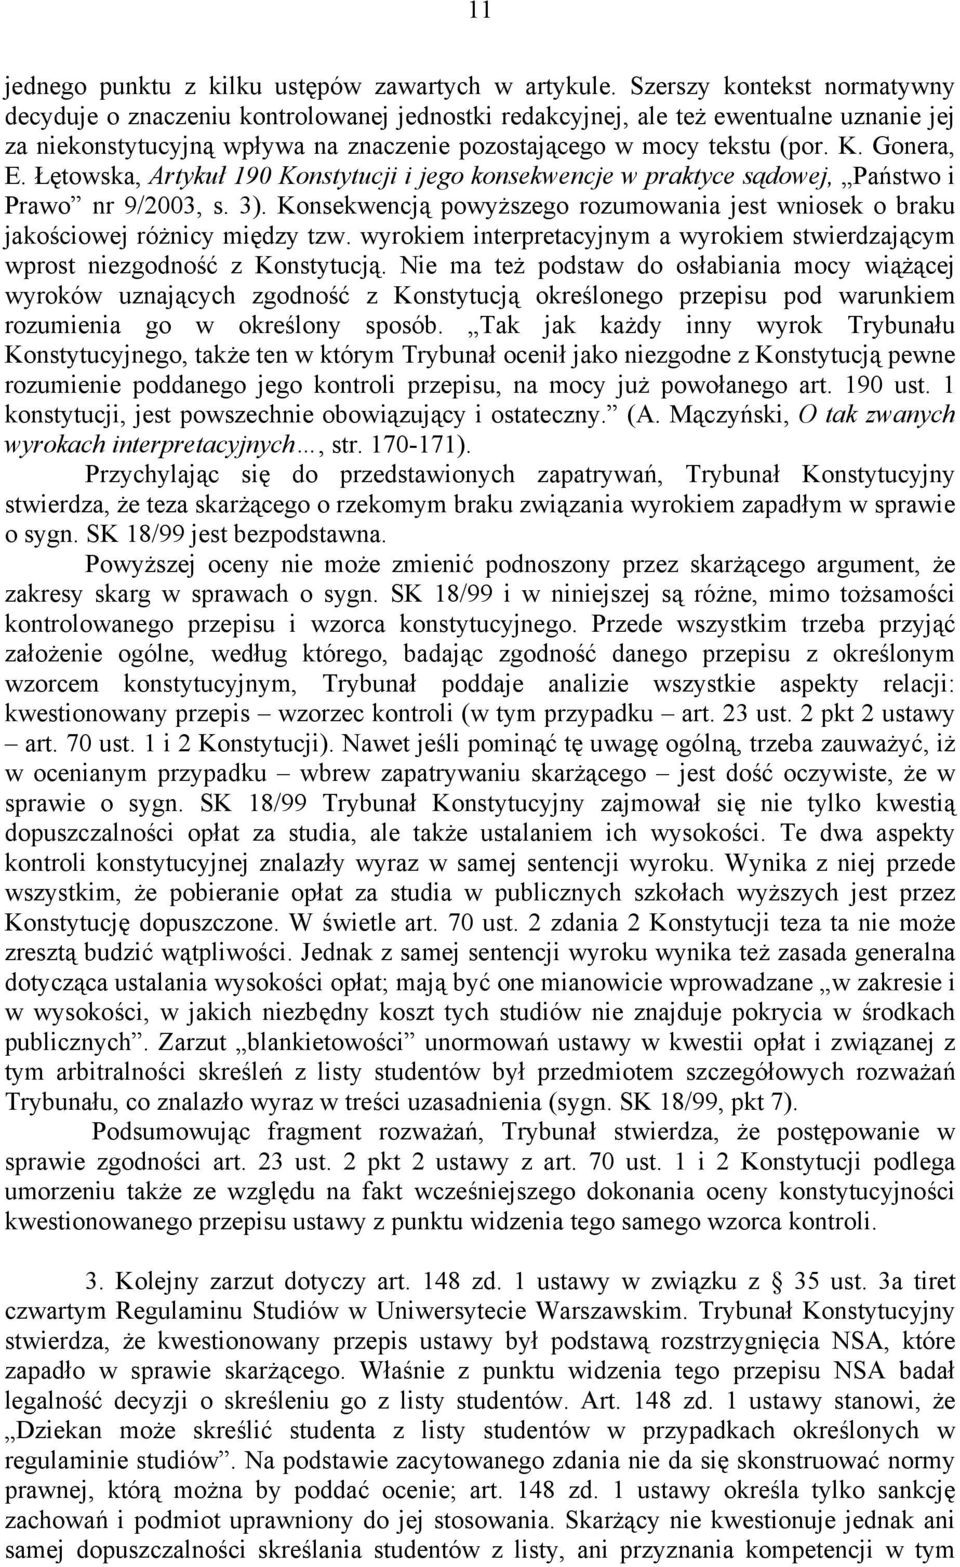 Gonera, E. Łętowska, Artykuł 190 Konstytucji i jego konsekwencje w praktyce sądowej, Państwo i Prawo nr 9/2003, s. 3).